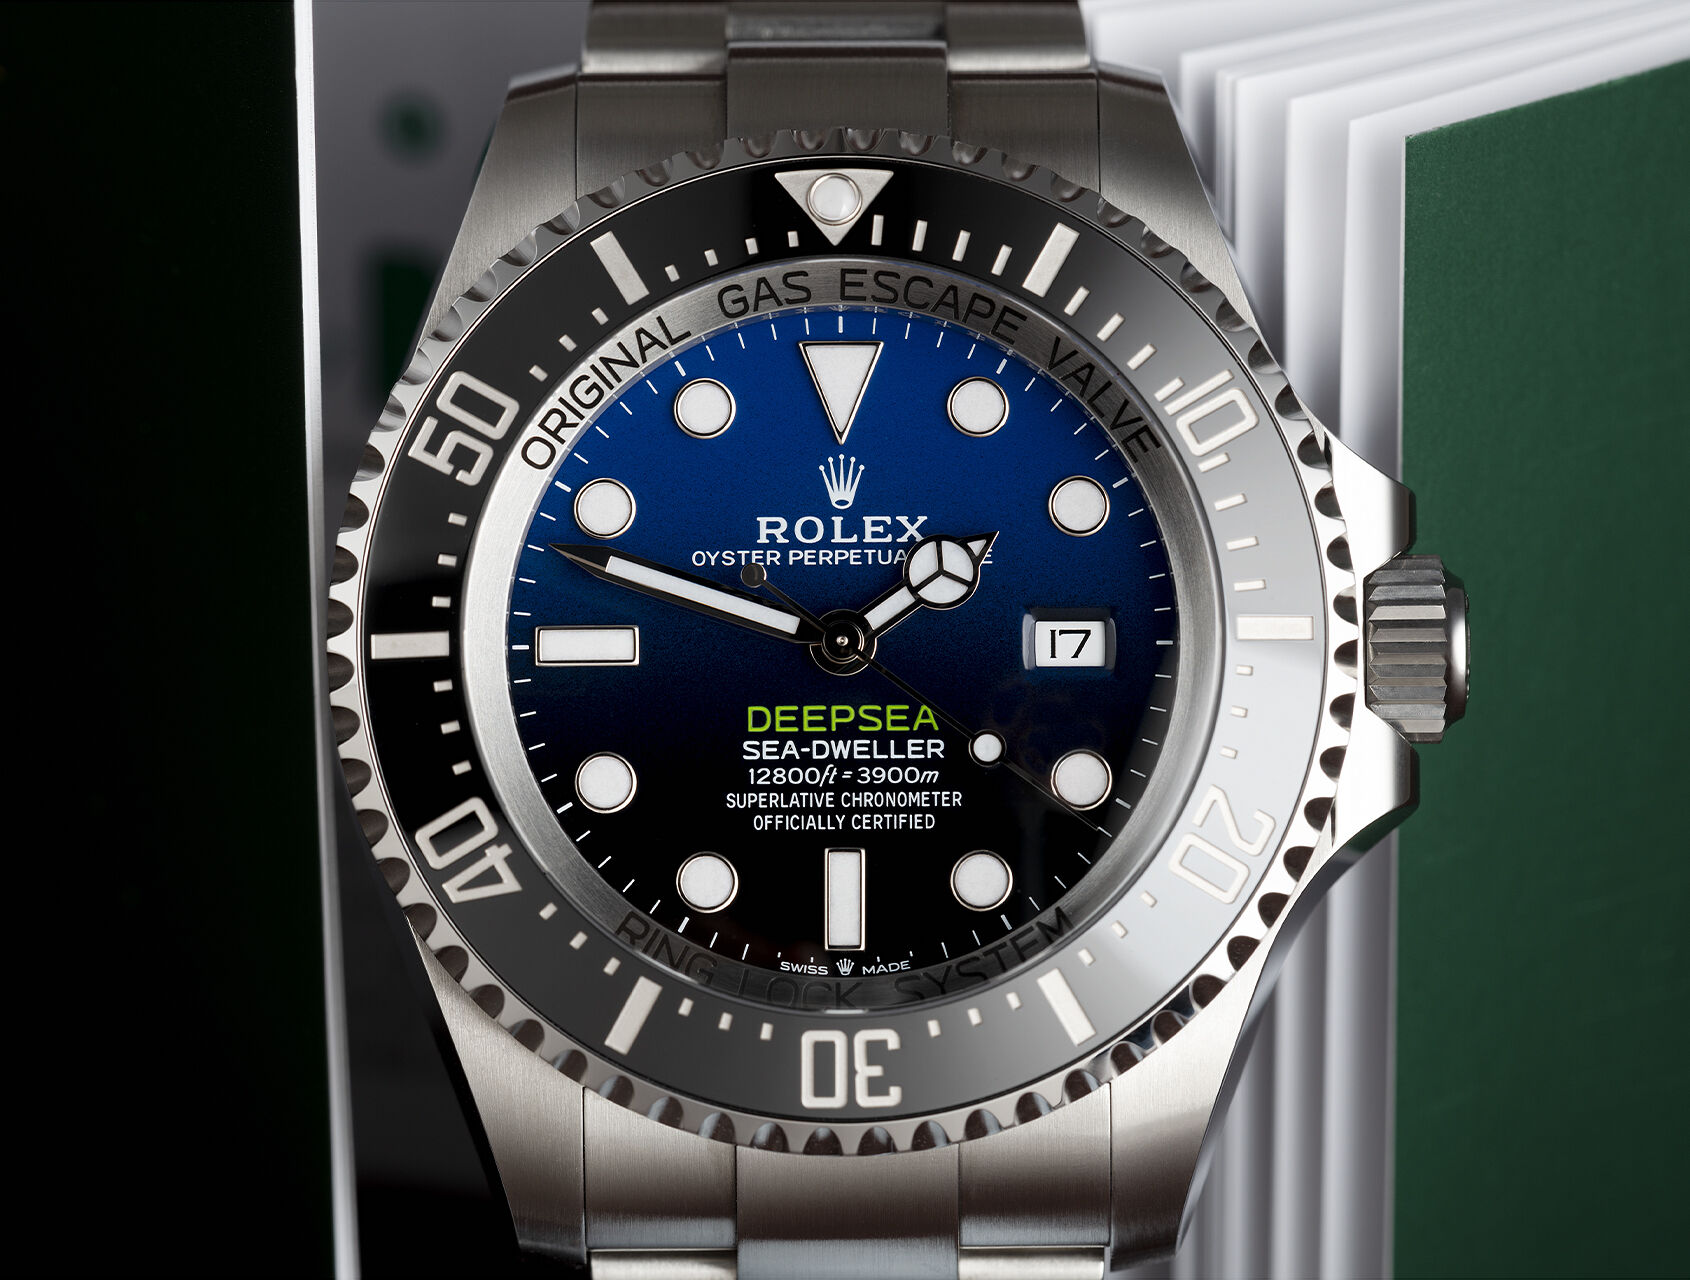 ref 126660 | 126660 - 5 Year Warranty | Rolex Deepsea D-Blue